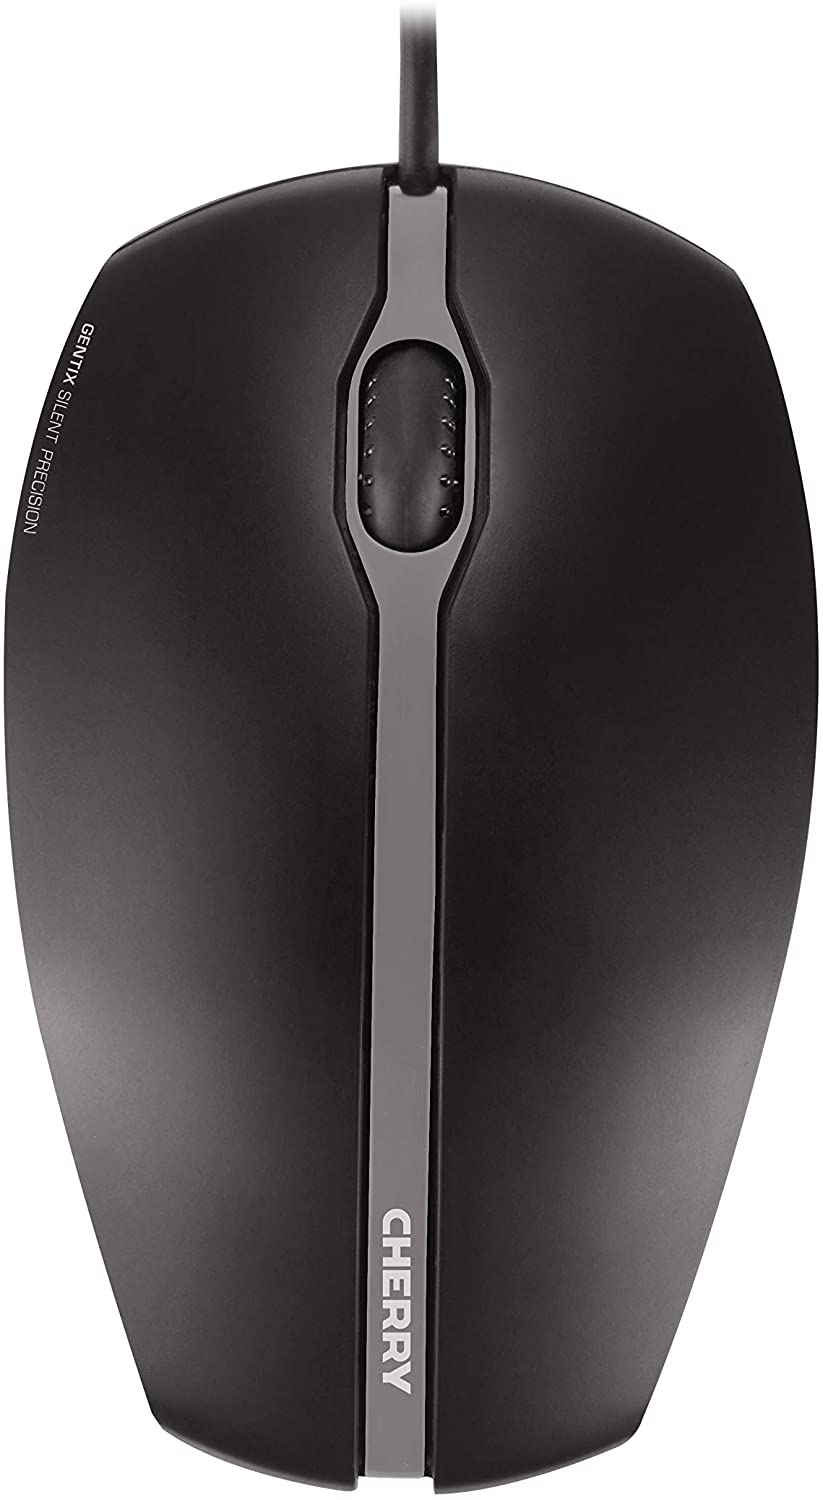 CHERRY GENTIX SILENT, kabelgebundene Maus, leise Design-Maus ohne Klick, perfekte Ergonomie, schwarz